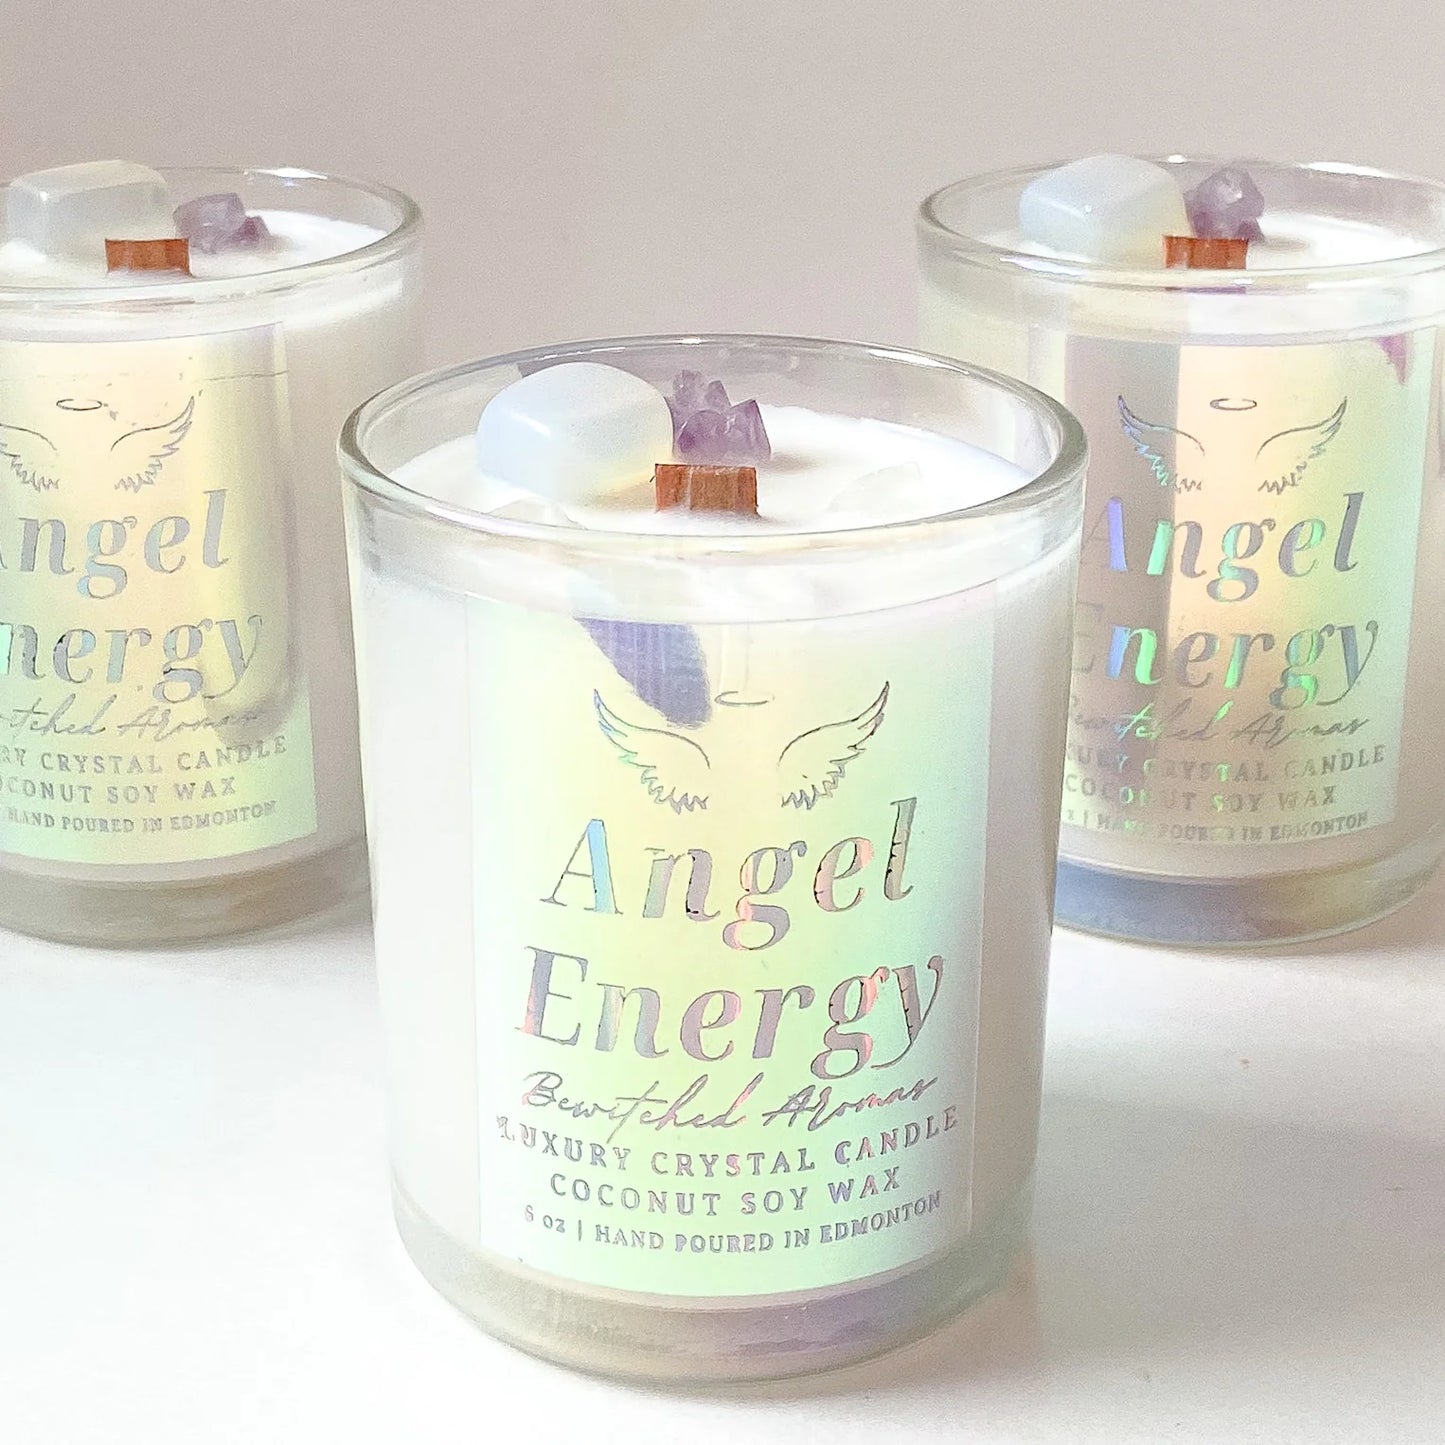 Angel Energy Luxury Crystal Candle